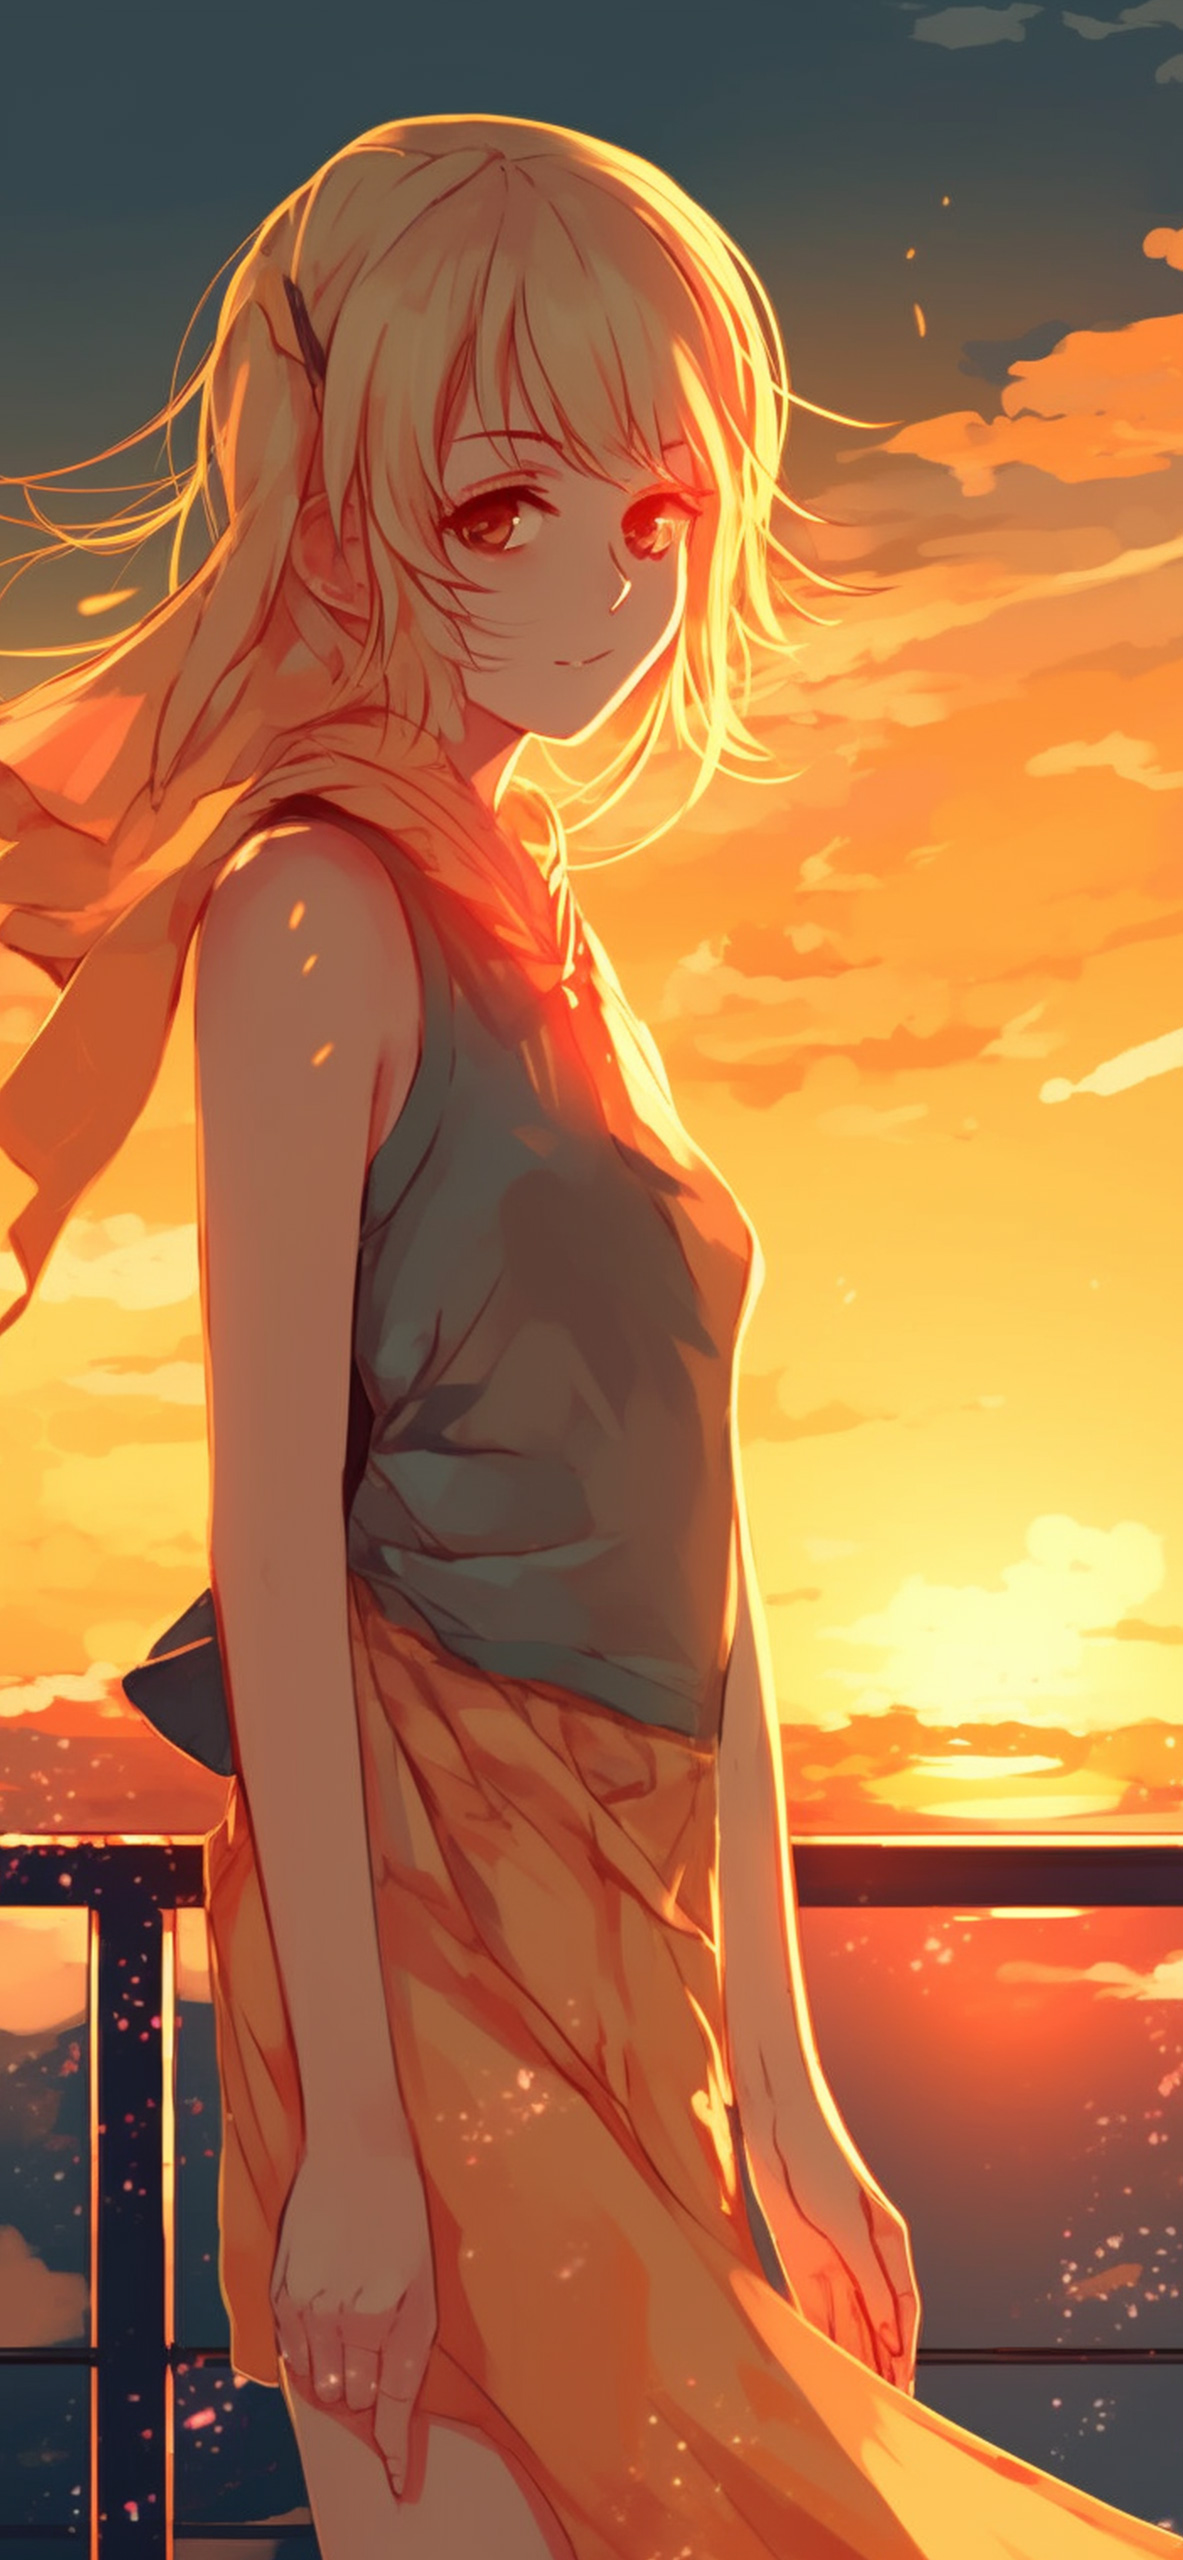 Anime Girl & Sunset Wallpaper Anime Girl Wallpaper for iPhone